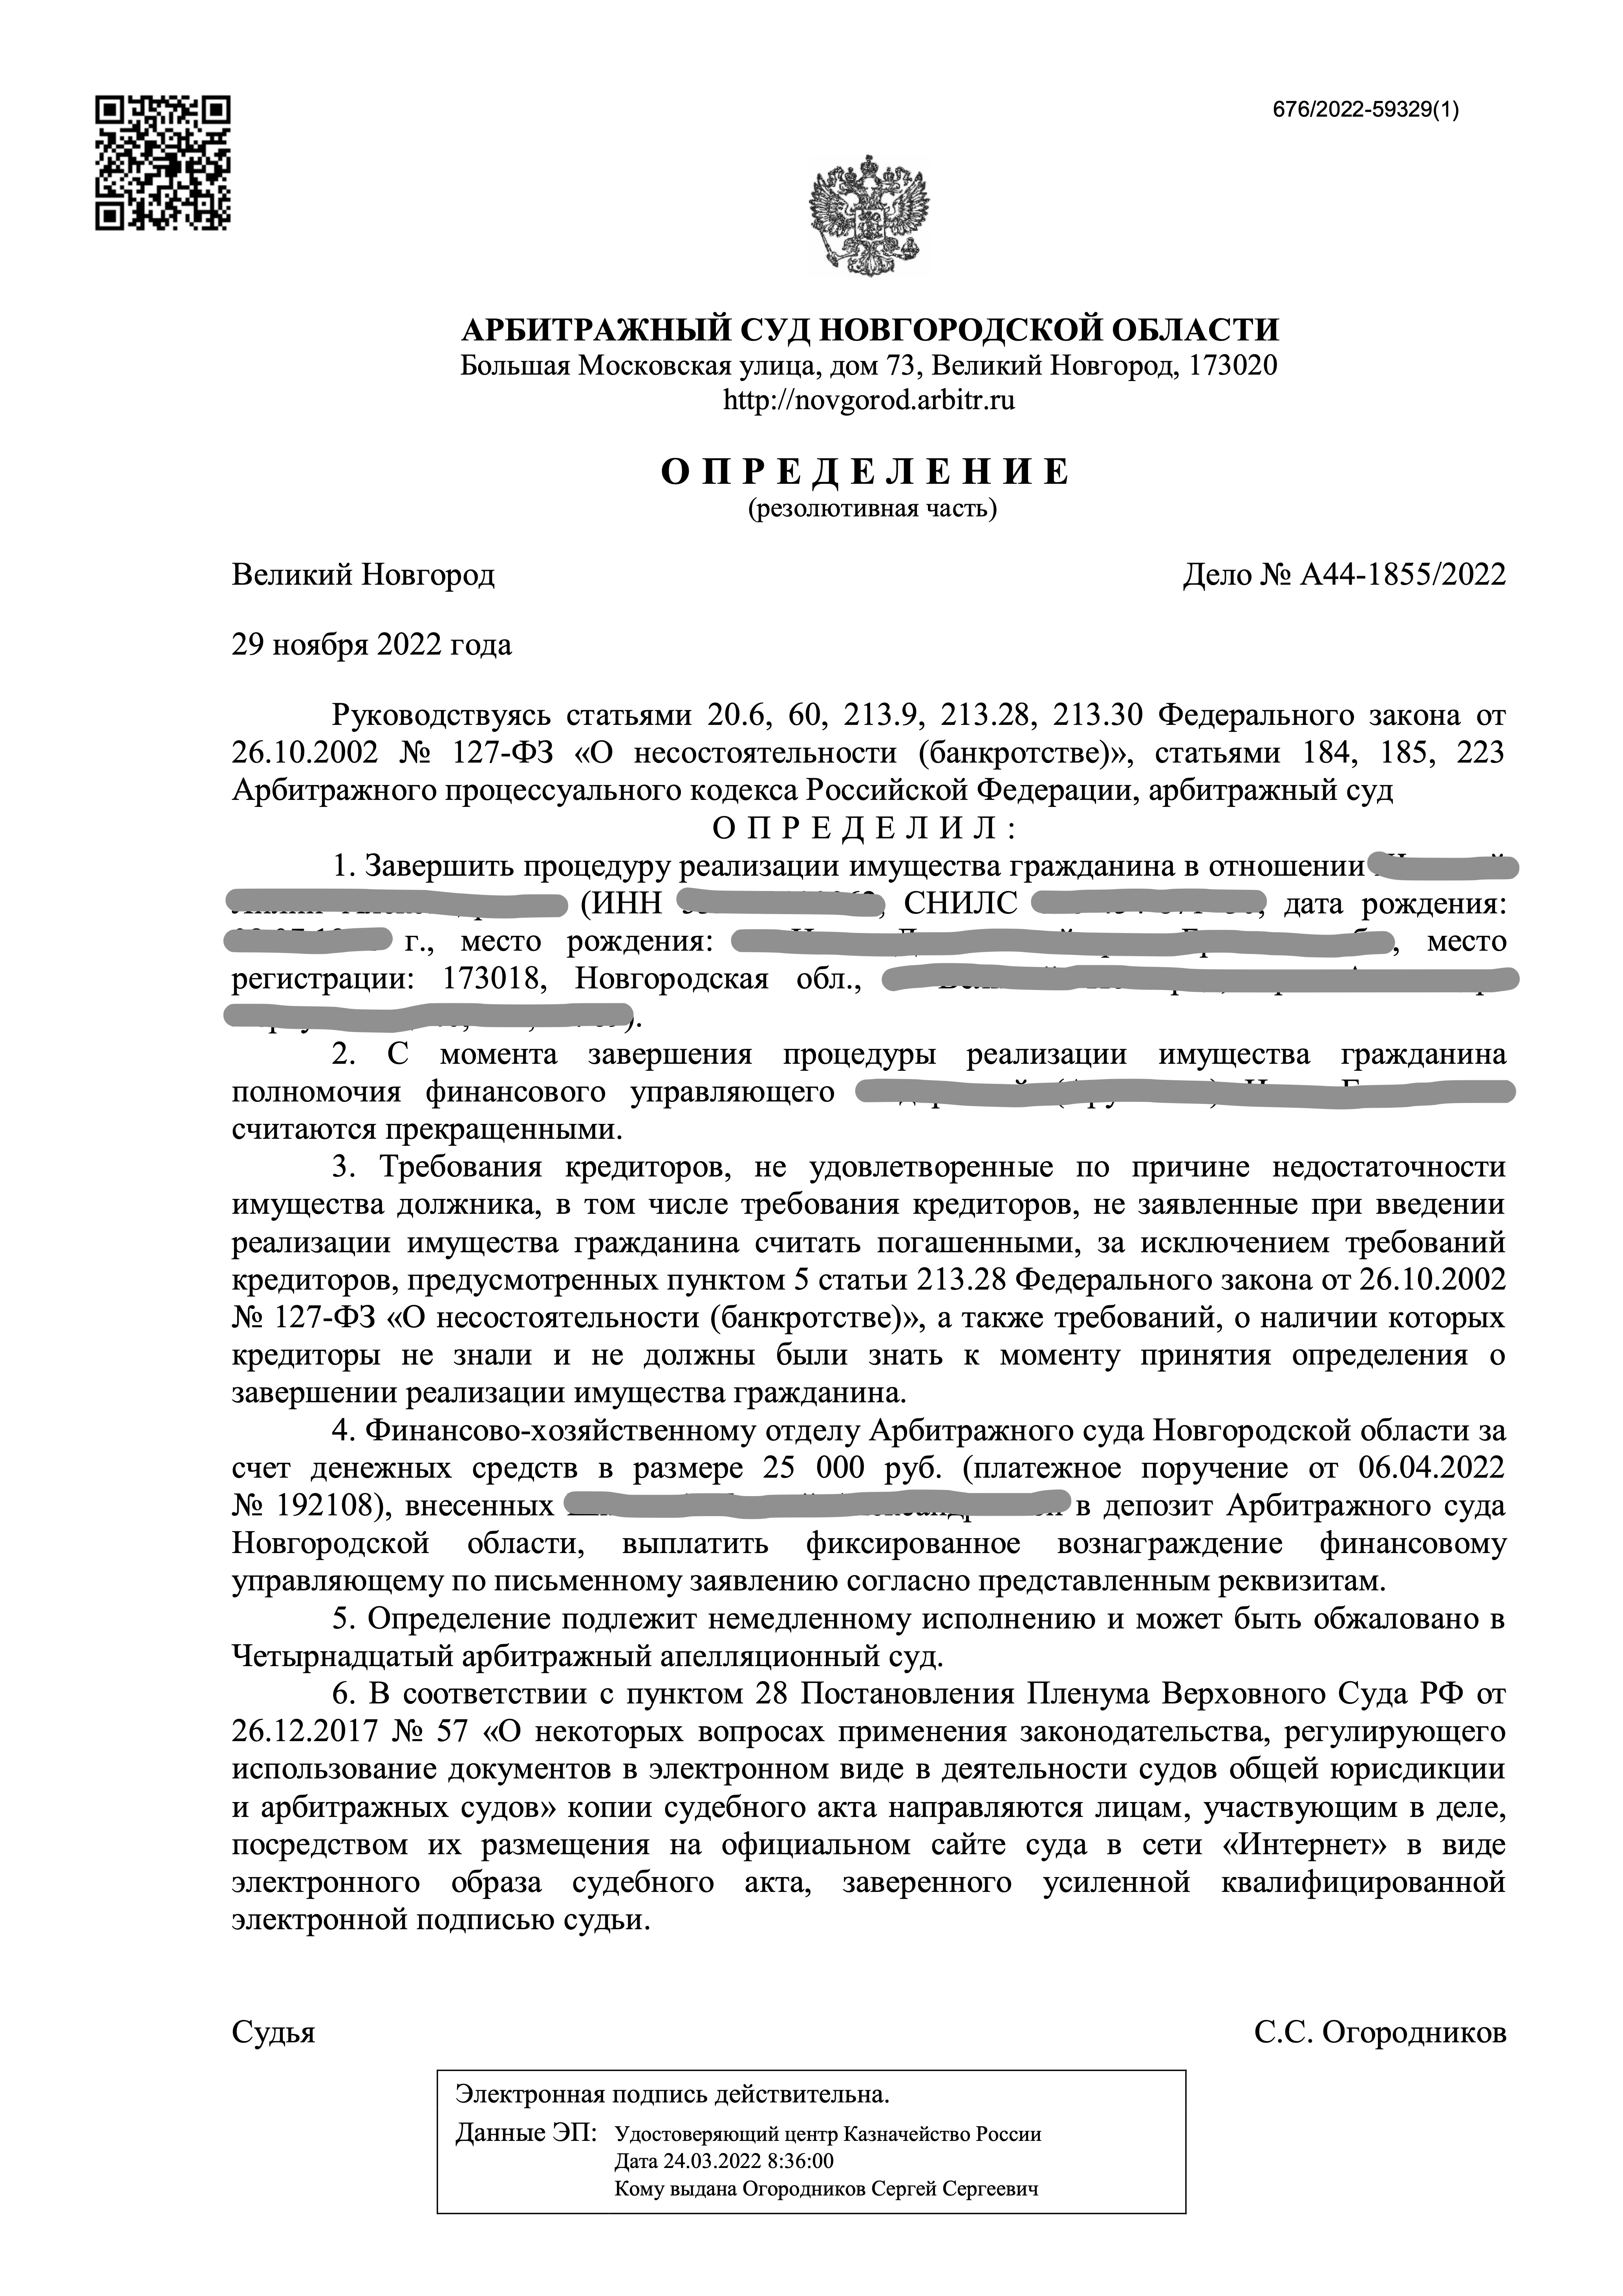 Завершили процедуру банкротства гражданина в Великом Новгороде